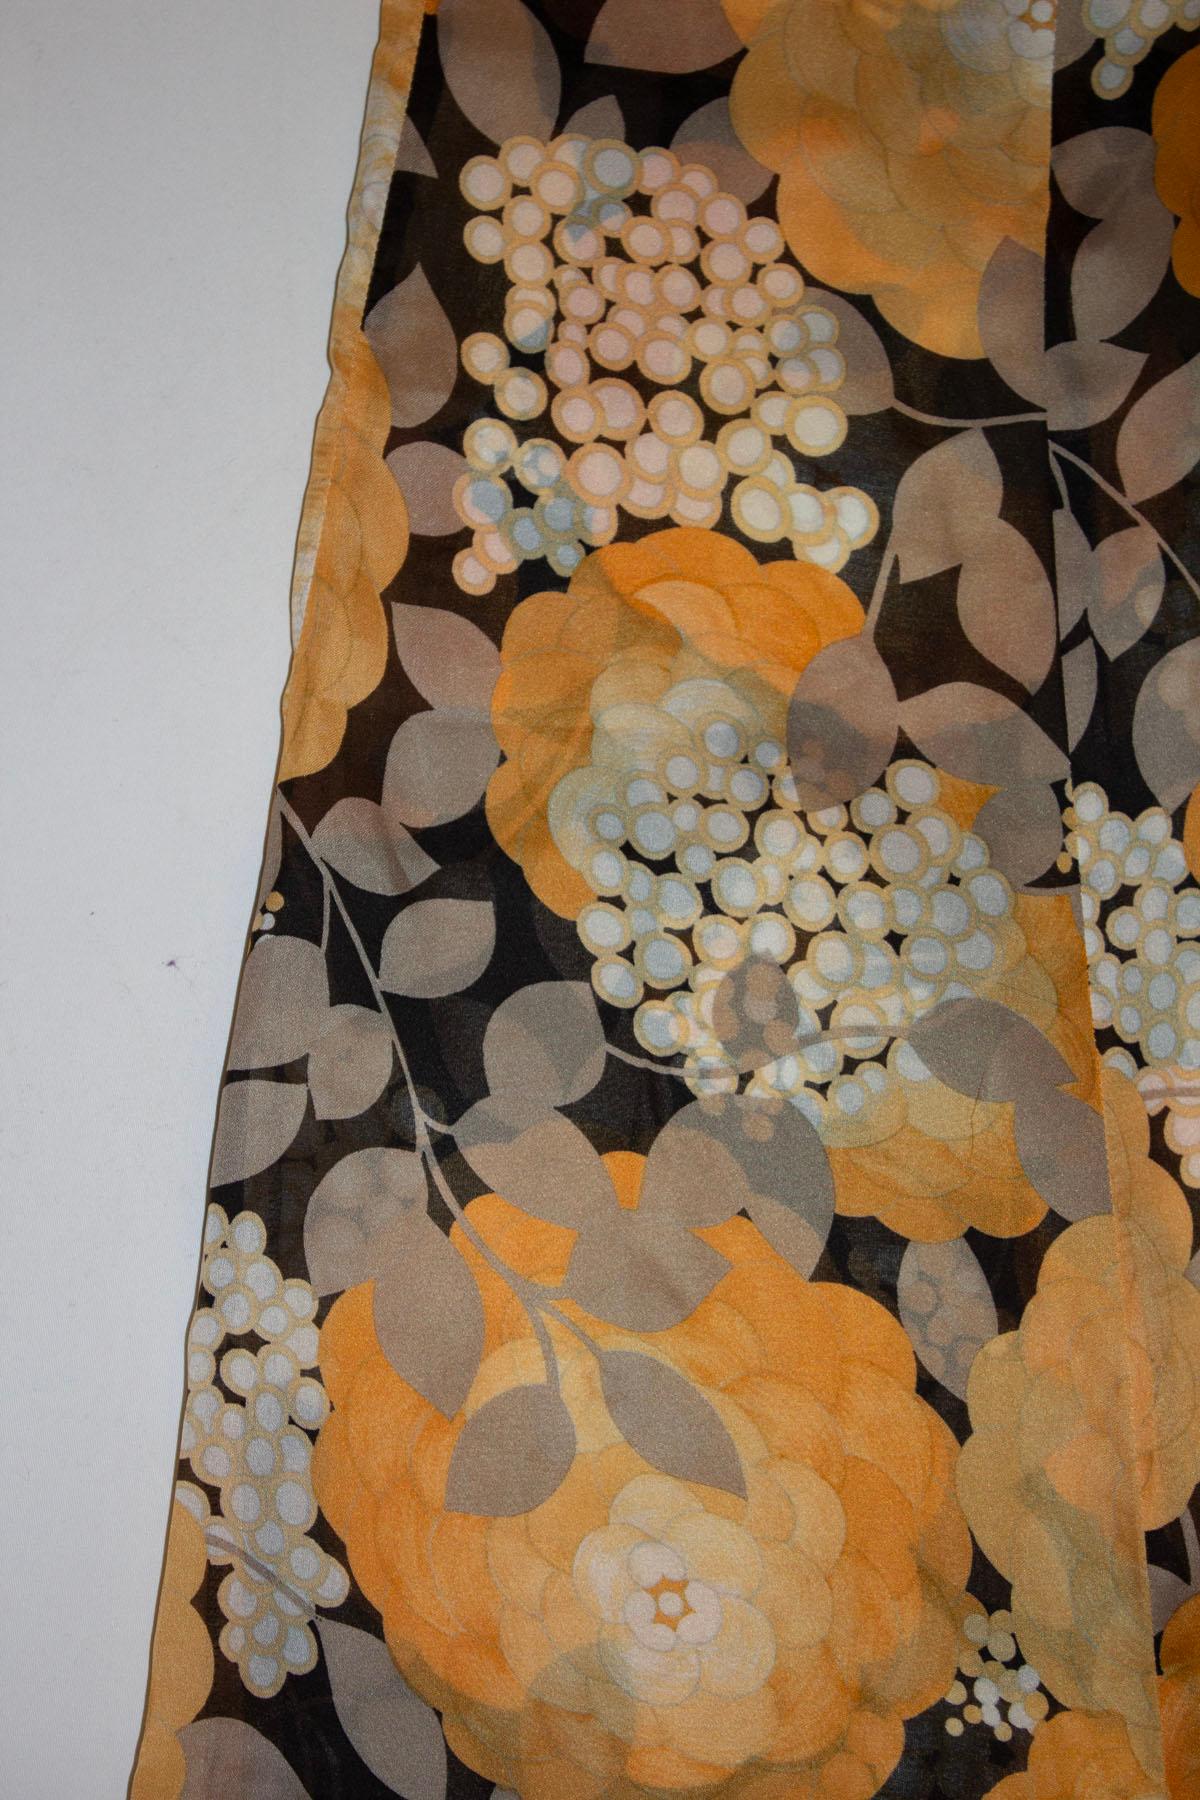  Un superbe pantalon en soie vintage, réalisé en France pour Bonwit Teller. Le pantalon présente un magnifique imprimé floral, en noir, orange et blanc.  Ils sont dotés d'une ouverture zippée au dos. Mesures : taille 26''', jambe intérieure 29''